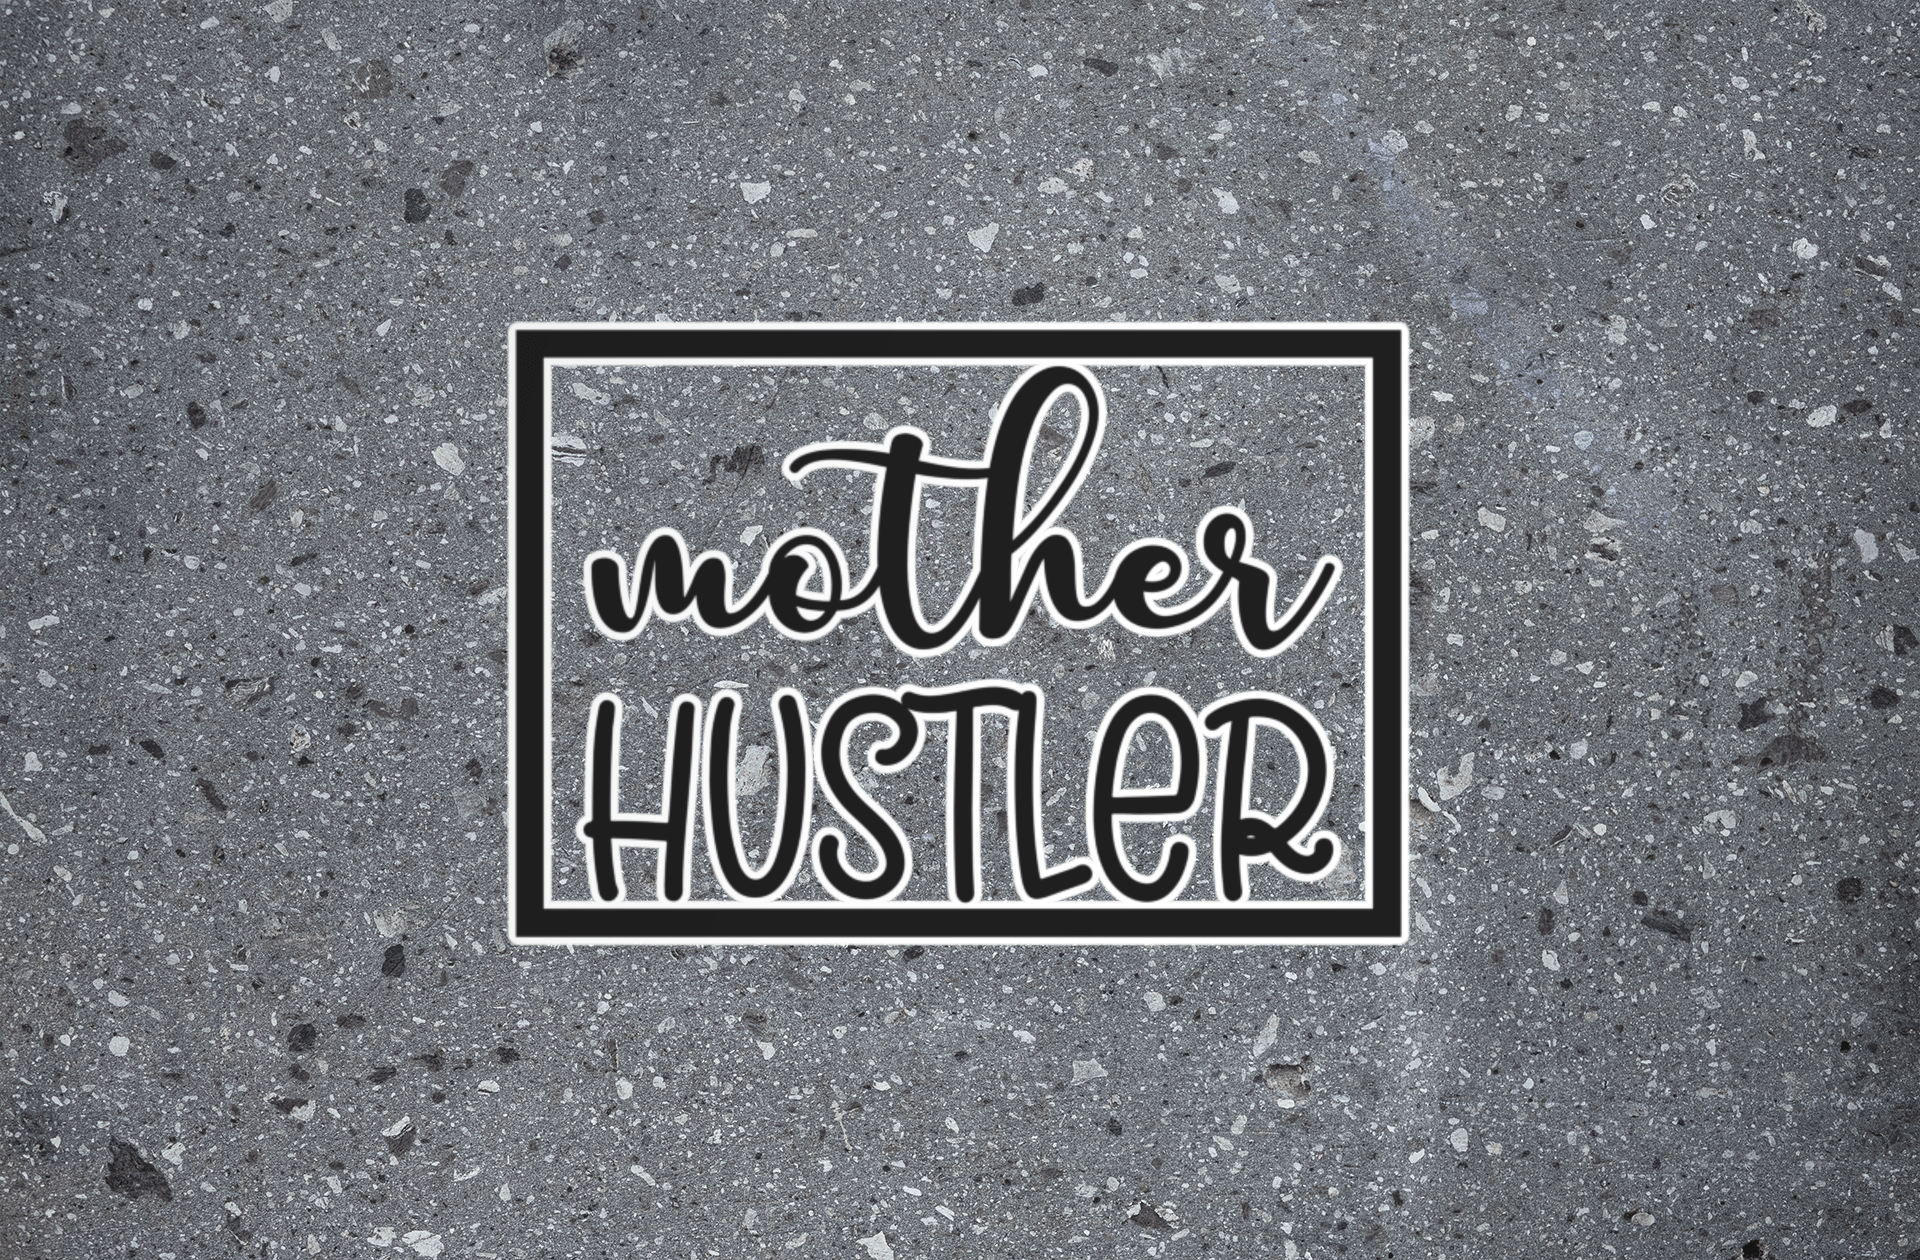 Mother Hustler Kiss-Cut Sticker - beyourownherodesign